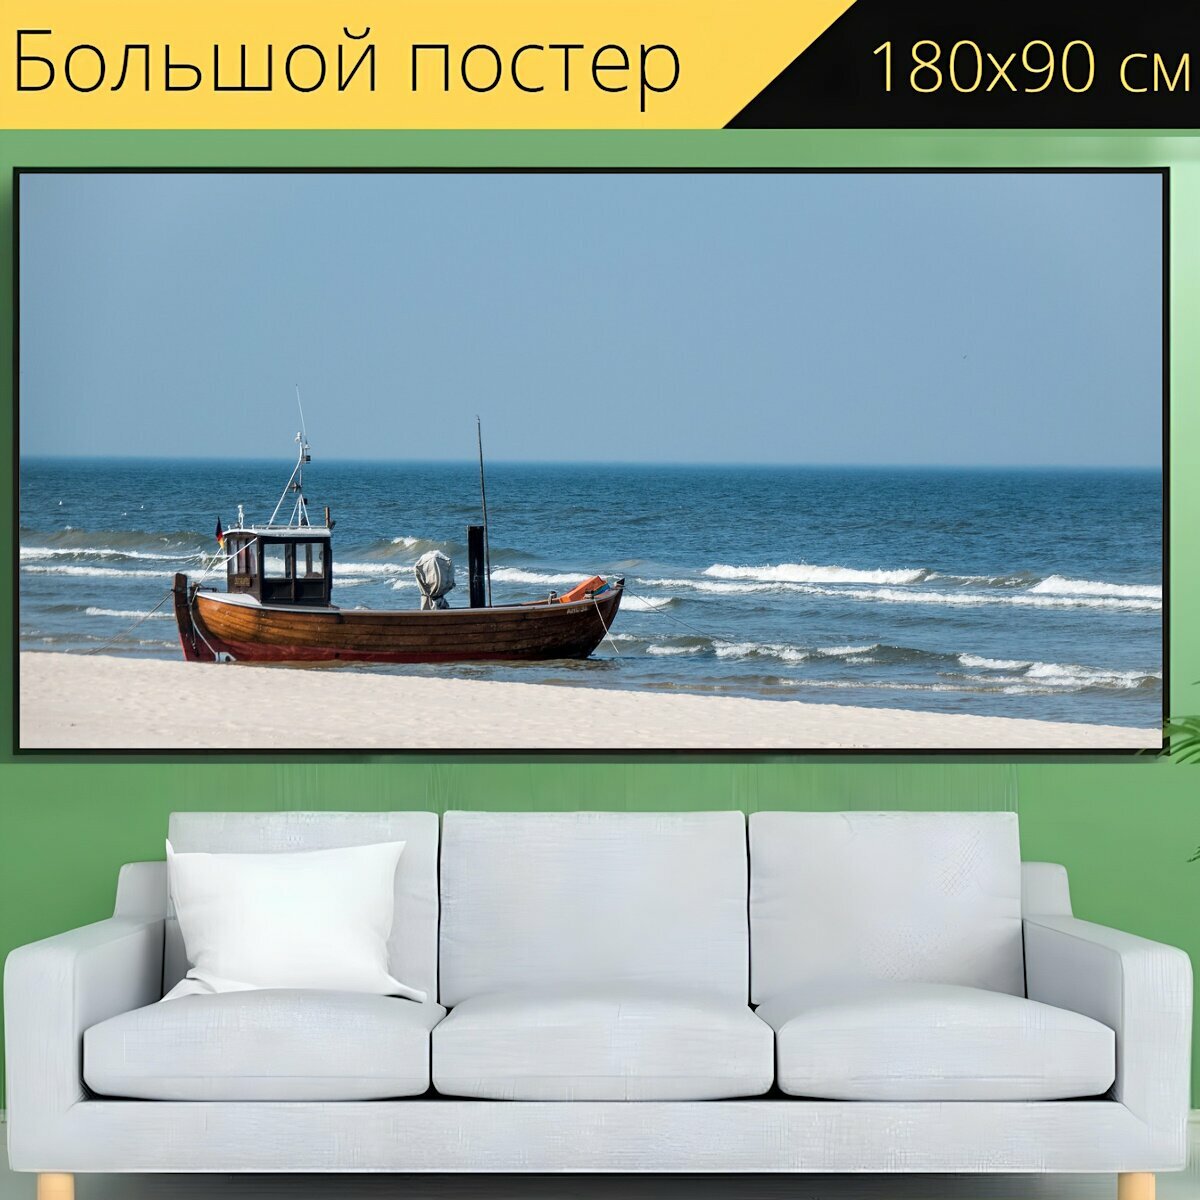 Большой постер "Балтийское море, лодка, судно" 180 x 90 см. для интерьера